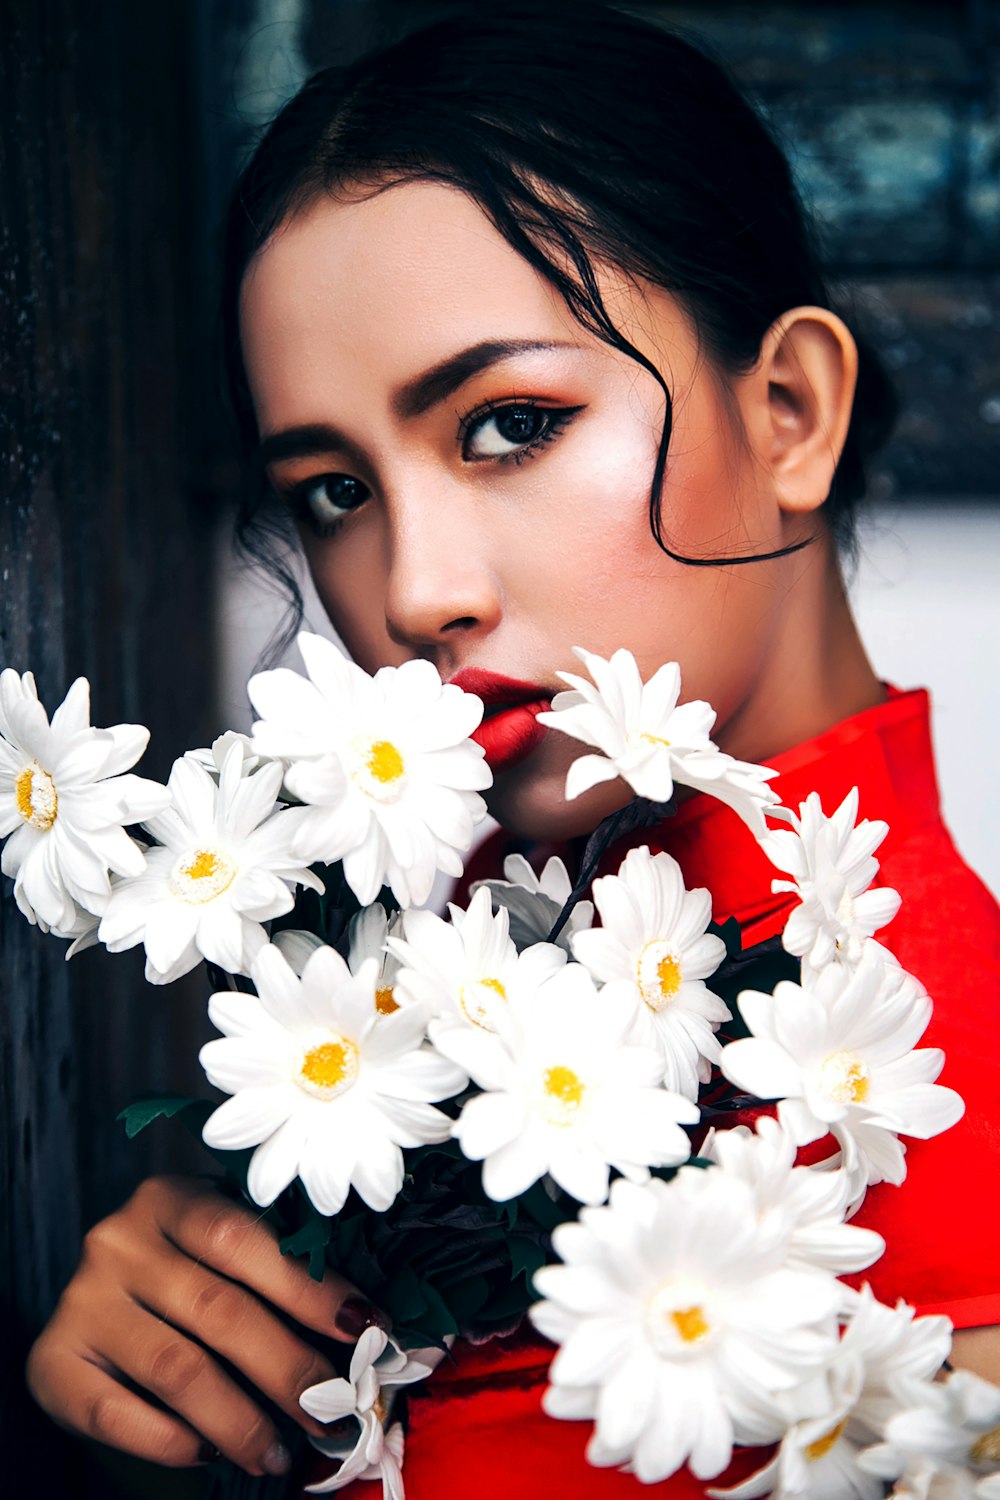 Femme en chemise rouge tenant des fleurs de marguerite blanches